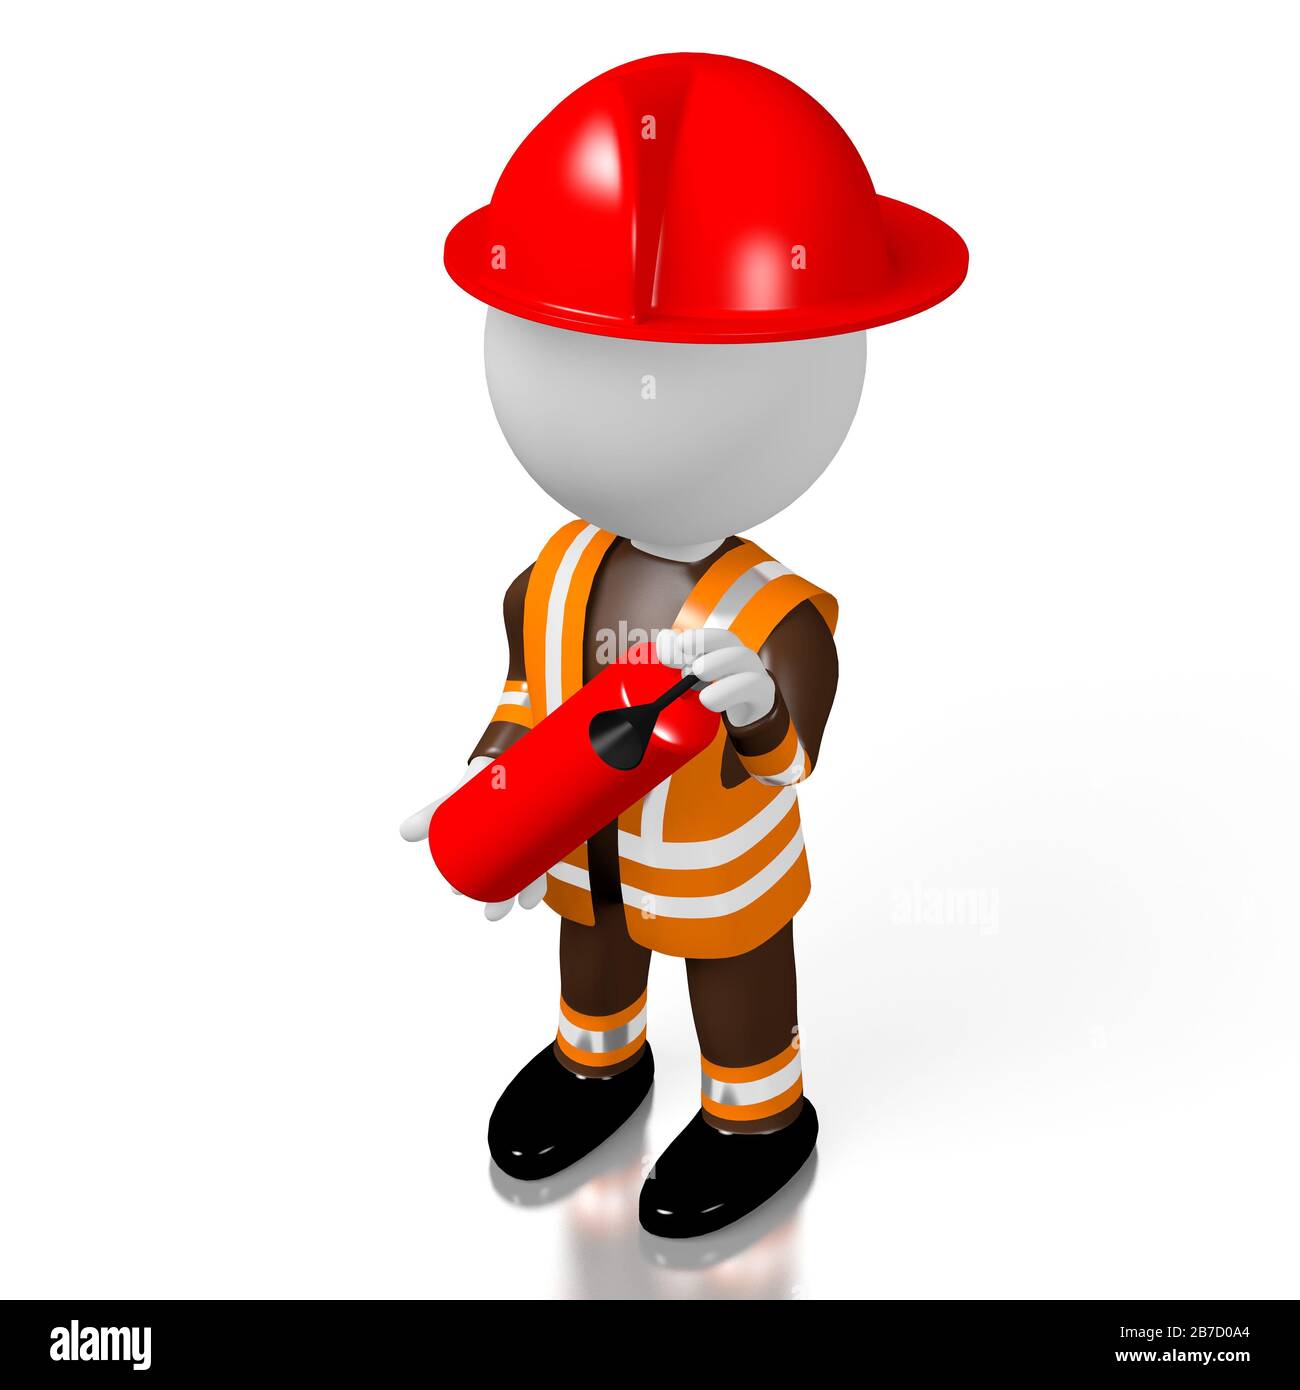 2,015 imágenes, fotos de stock, objetos en 3D y vectores sobre  Firefighter's helmet